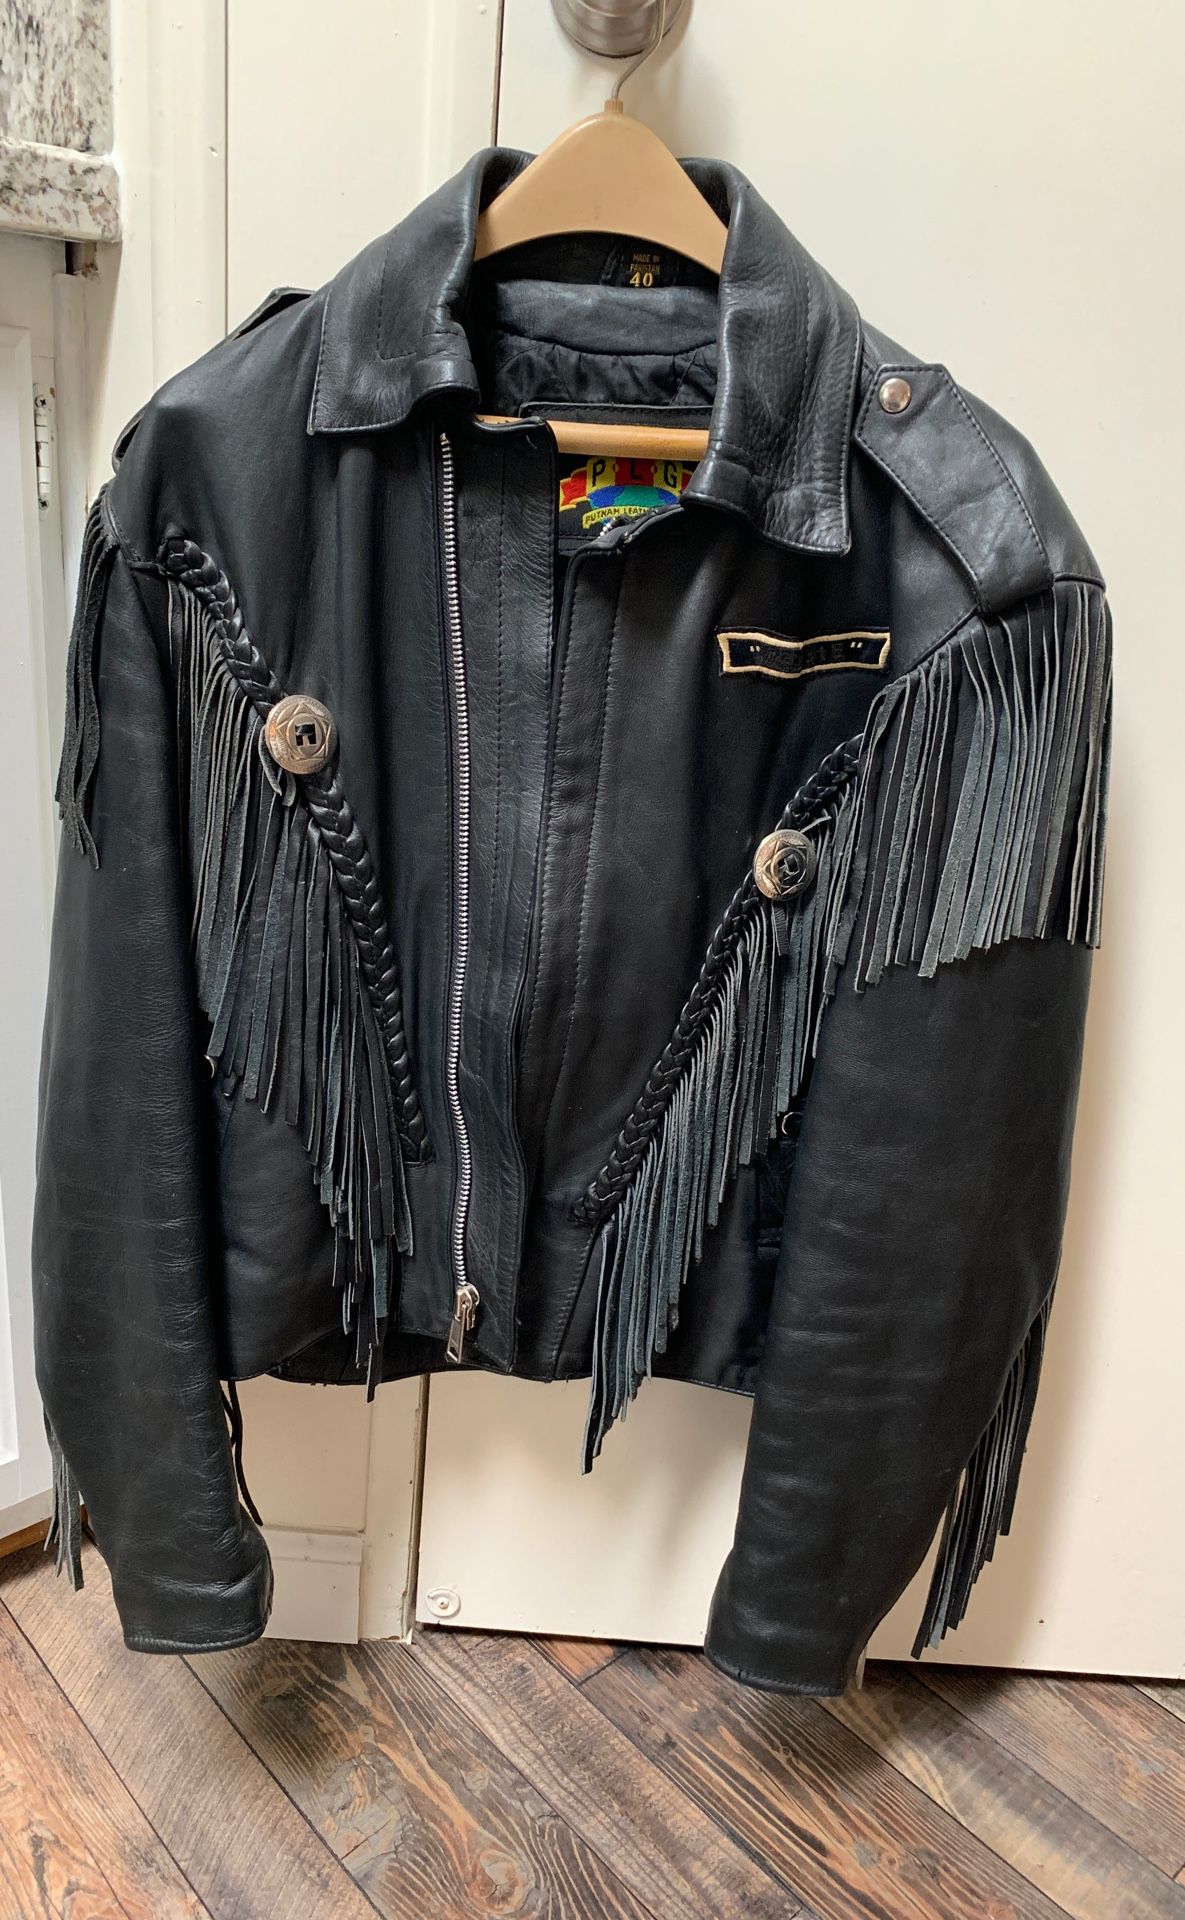 Leather set size medium Lady’s Chaps Vest 